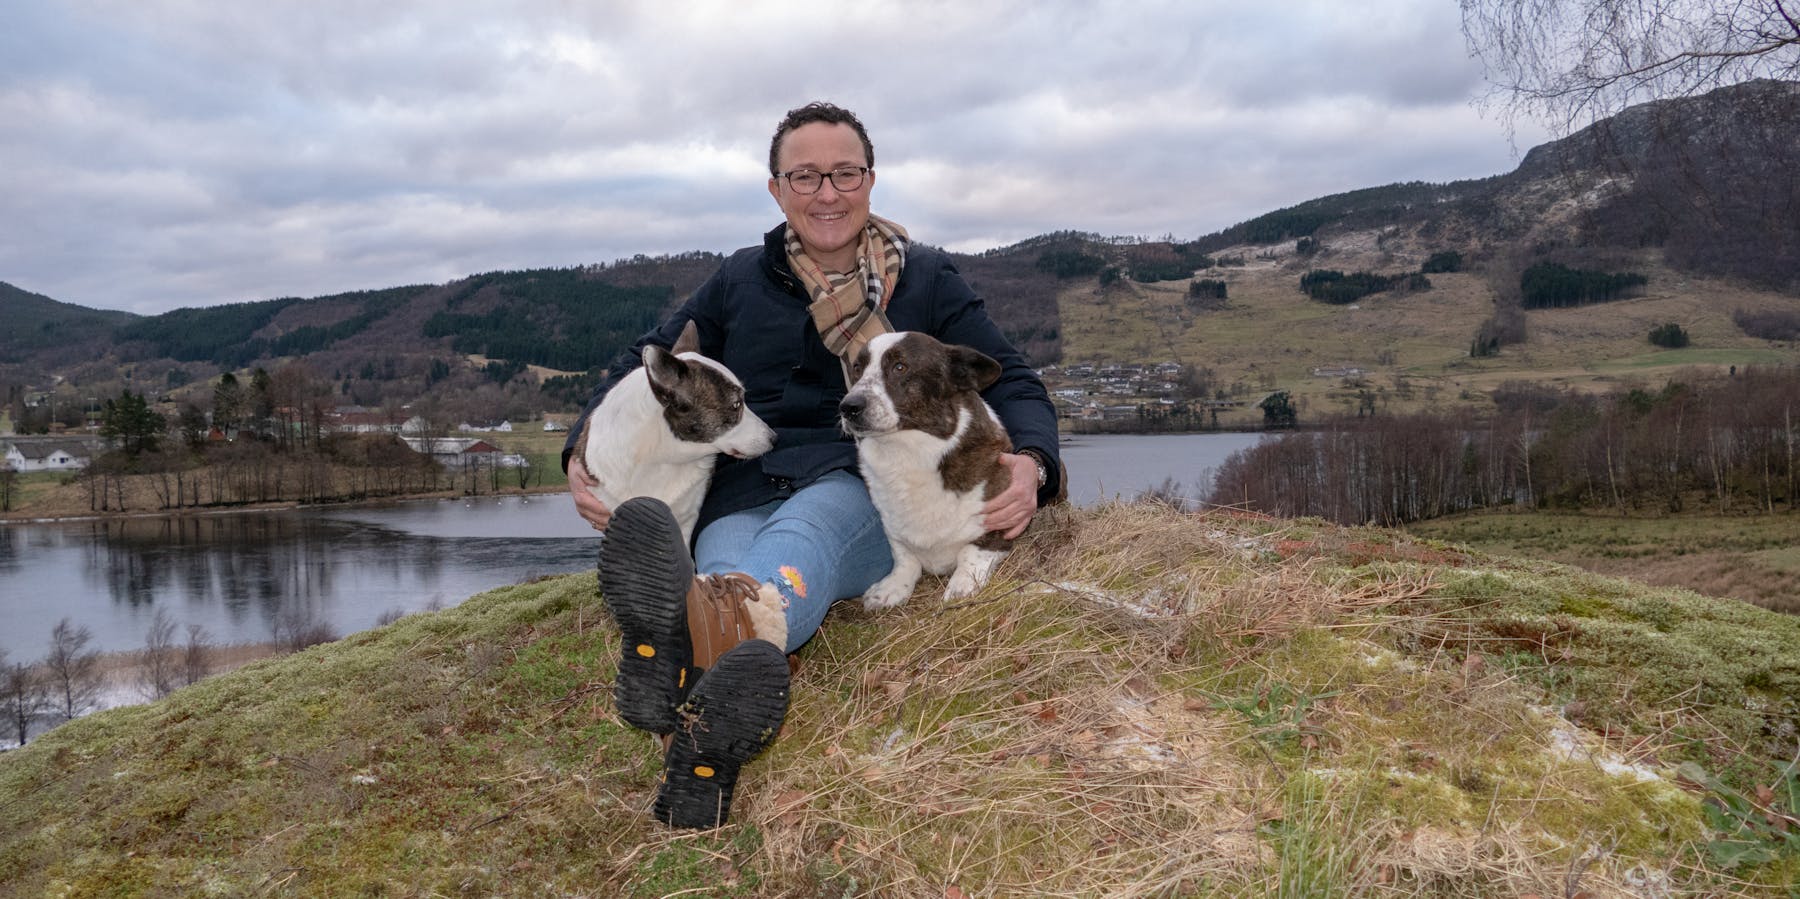 Med utgangspunkt i garden sin på Vatne i Nedre Vats har Ingrid Prytz Ohm lagt ned ein enorm innsats for utvikling av hunderasen Welsh Corgi Cardigan verda over. Oppdrettarprisen for 2018 er eit prov på det. 
Foto: Torleif Heggebø